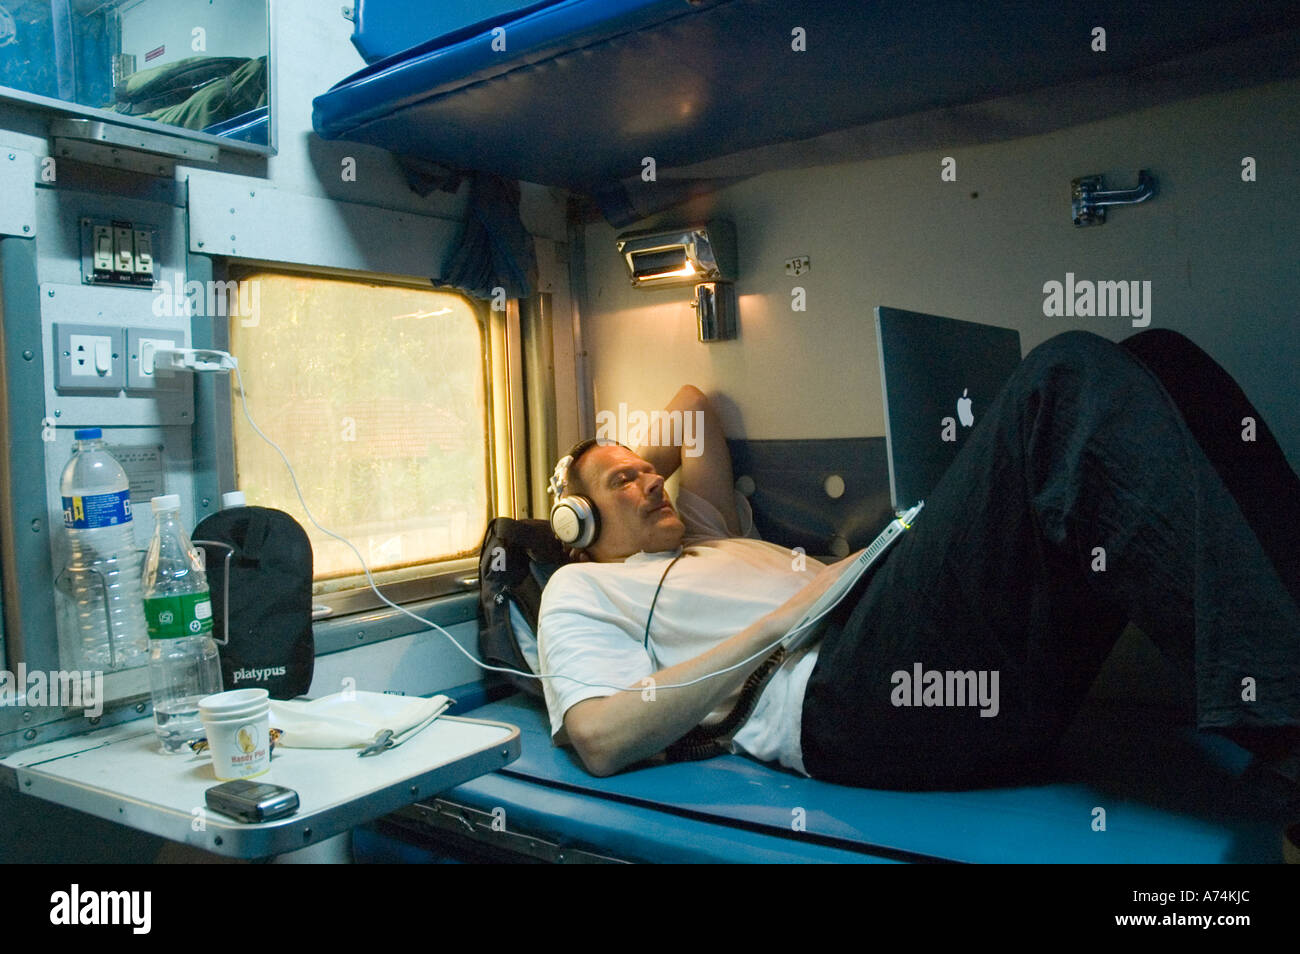 Un homme à l'aide d'un ordinateur portable sur un train indien Banque D'Images